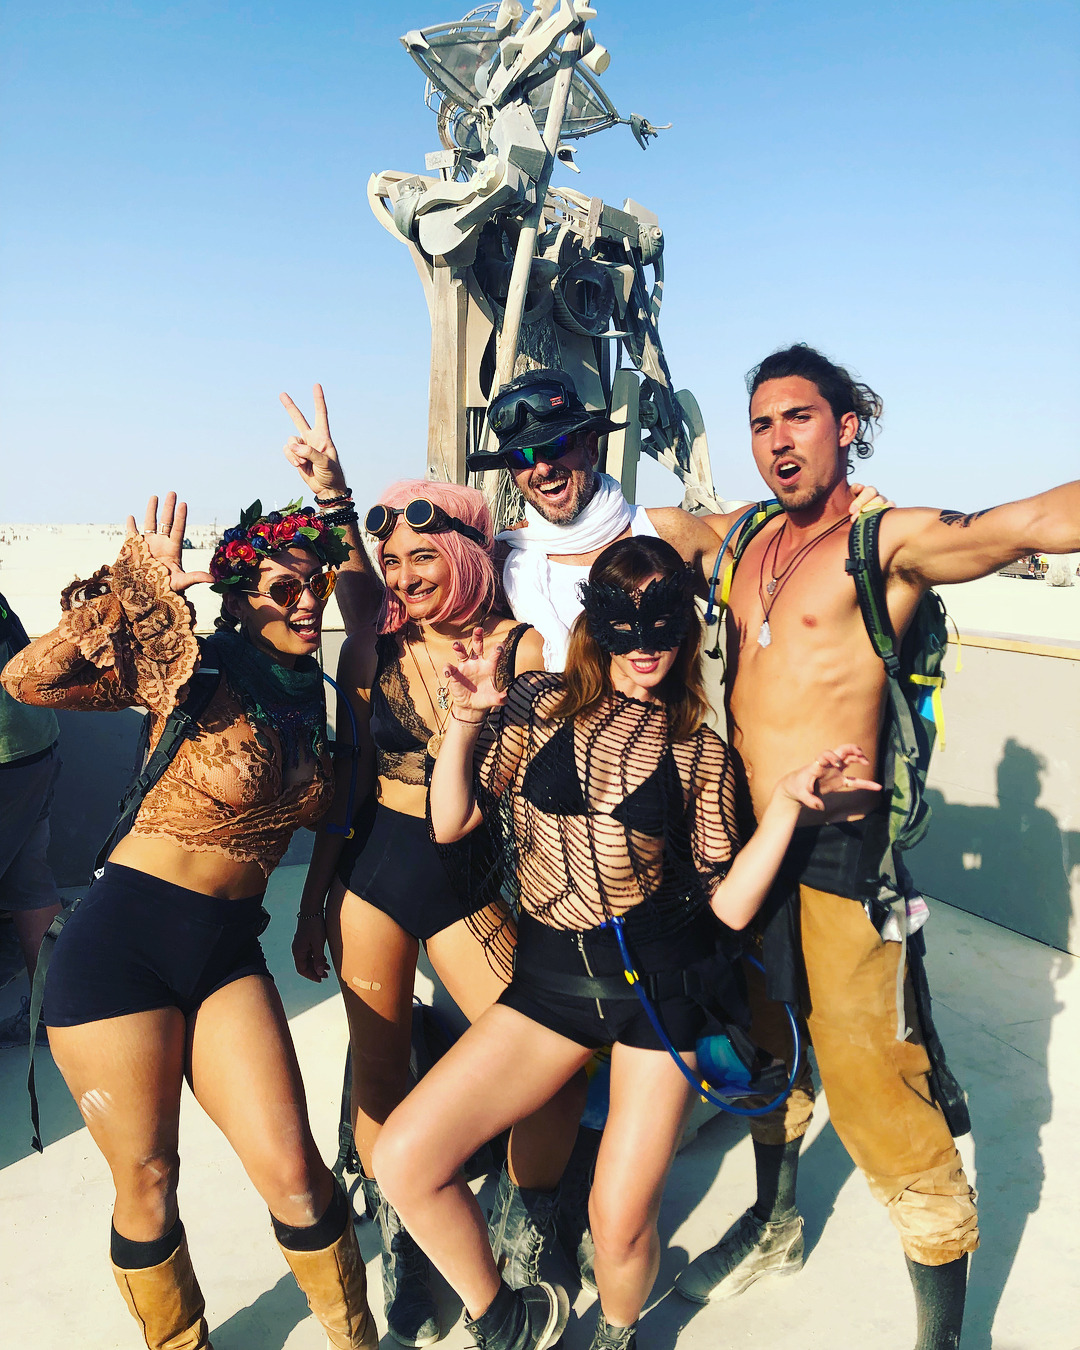 dexterqiii: Emma Watson at Burning Man 2018 Burning Man, Black Rock desert in Nevada